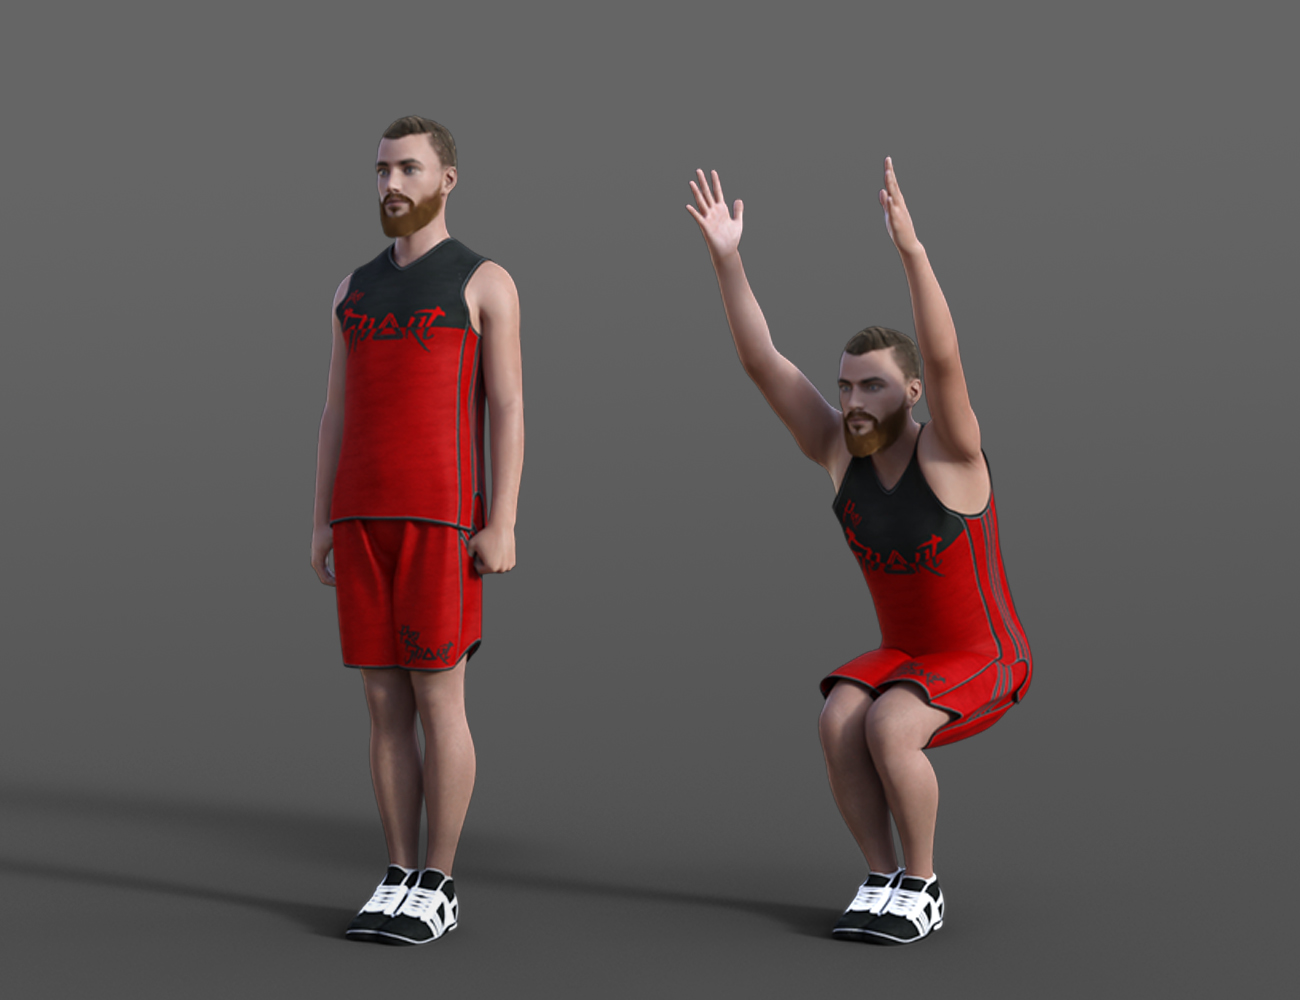 Yoga Animations for Genesis 8 by: ThreeDigital, 3D Models by Daz 3D